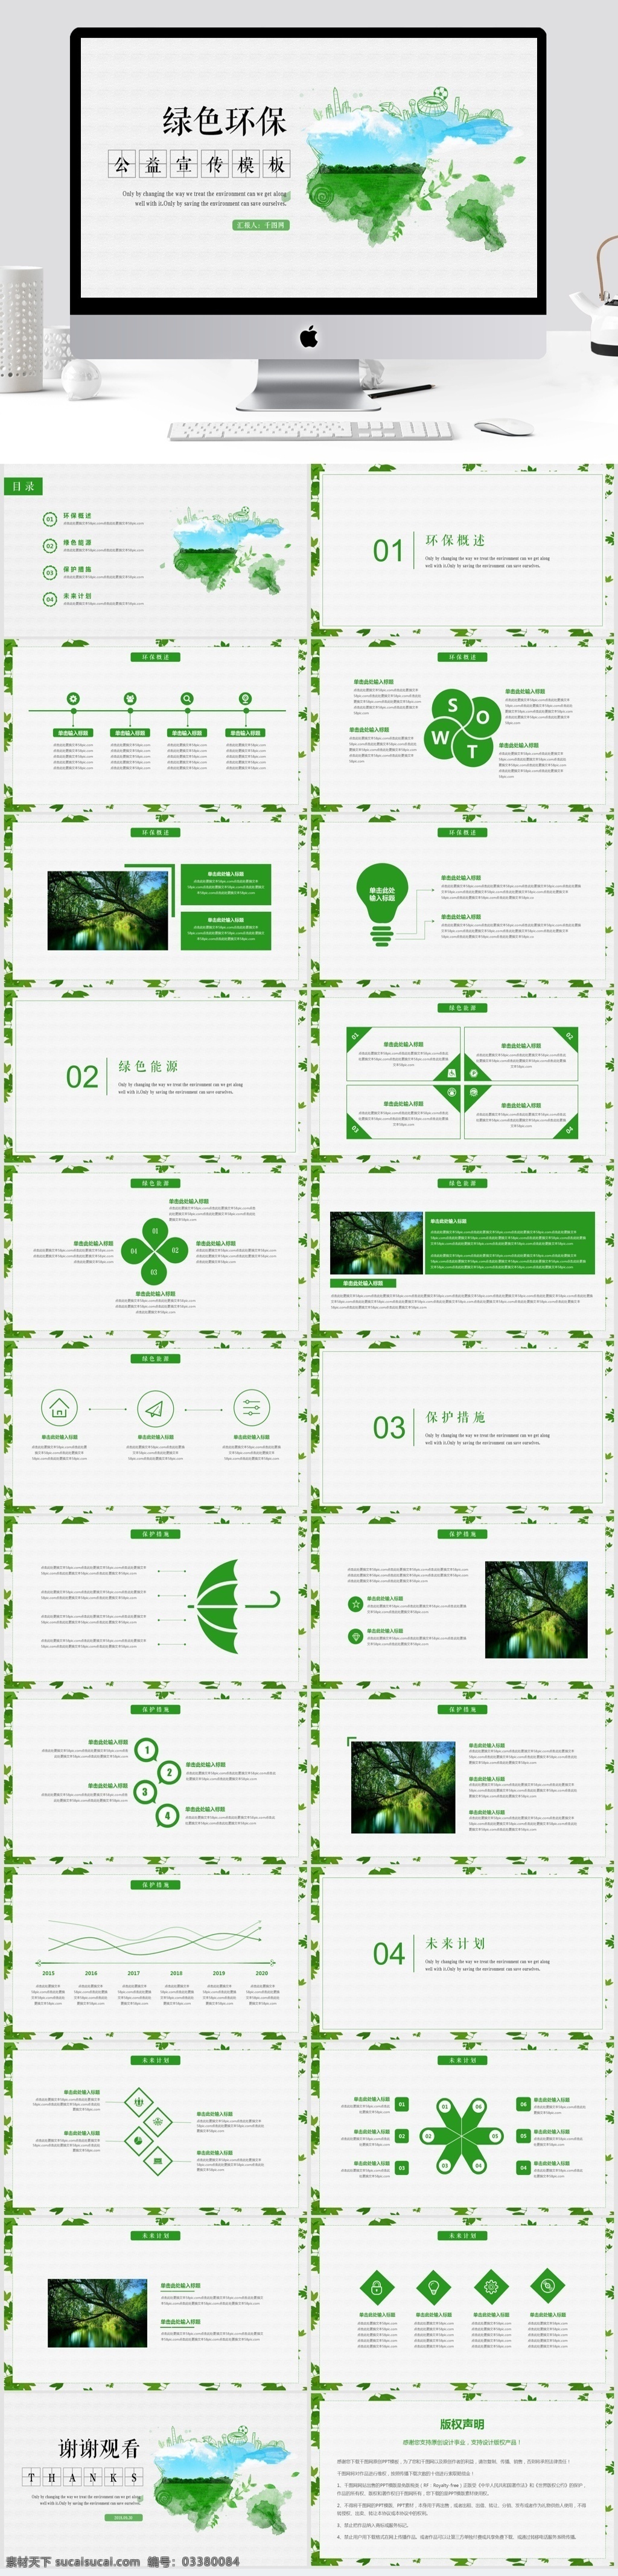 绿色环保 公益 宣传 通用 模板 绿色 环保 ppt模板 简约 公益宣传 保护地球 工作汇报 计划总结 模板下载 动态 爱护环境 自然